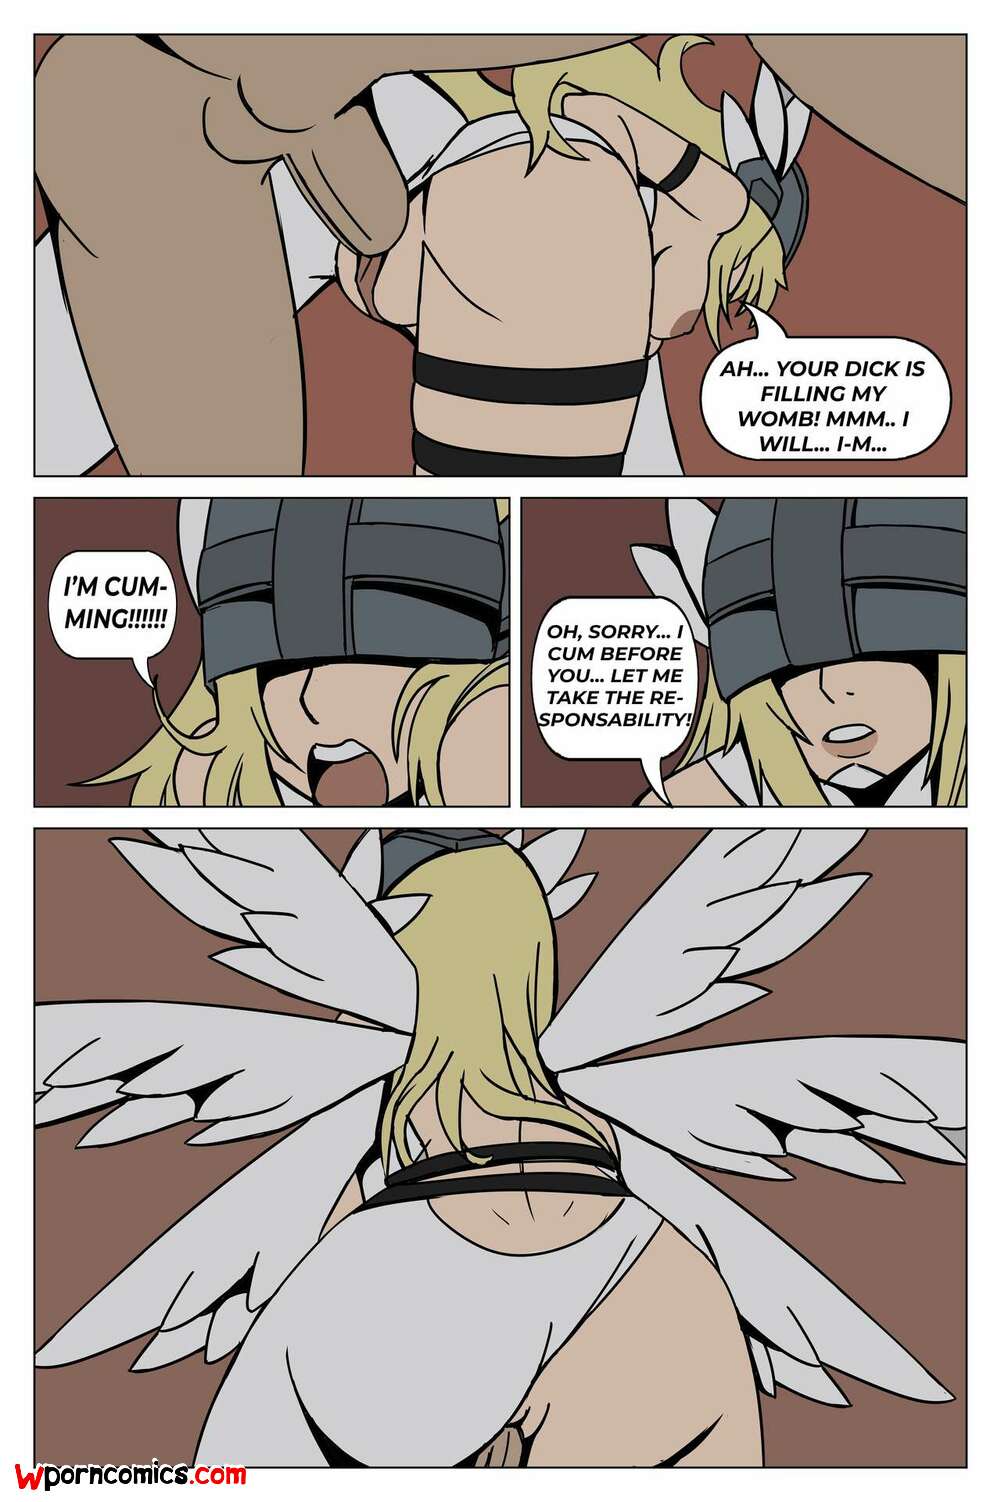 1001px x 1502px - âœ…ï¸ Porn comic Fallen Angel. Feith Noir Sex comic blonde beauty is | Porn  comics in English for adults only | sexkomix2.com